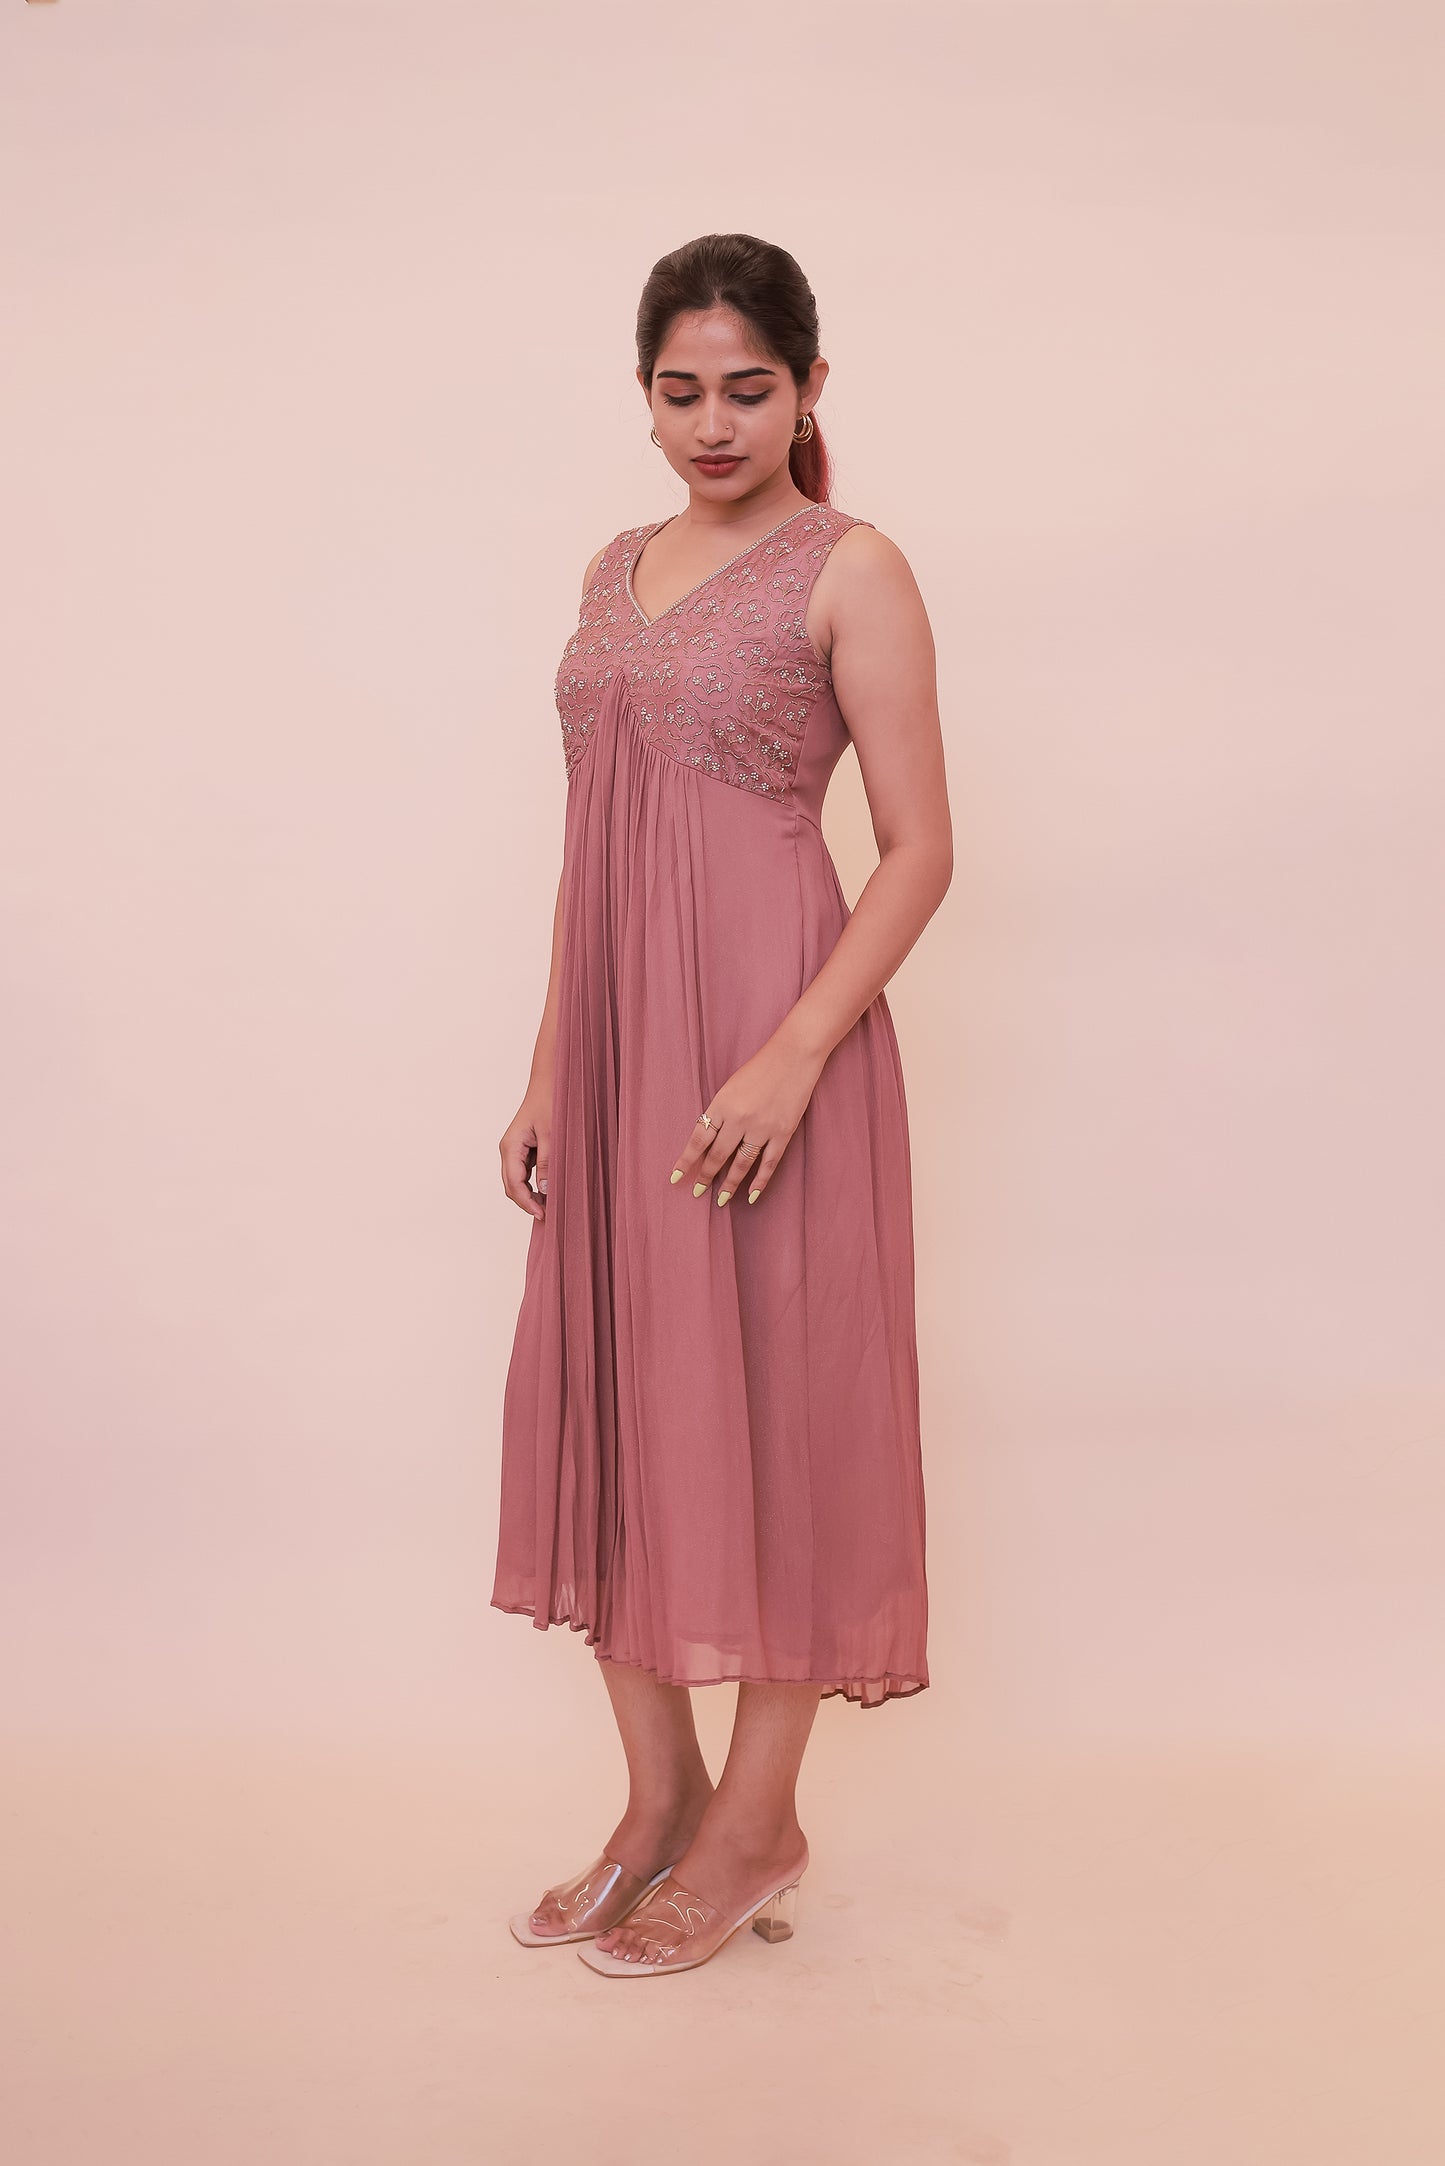 Shimmer georgette dusty pink Alia dress